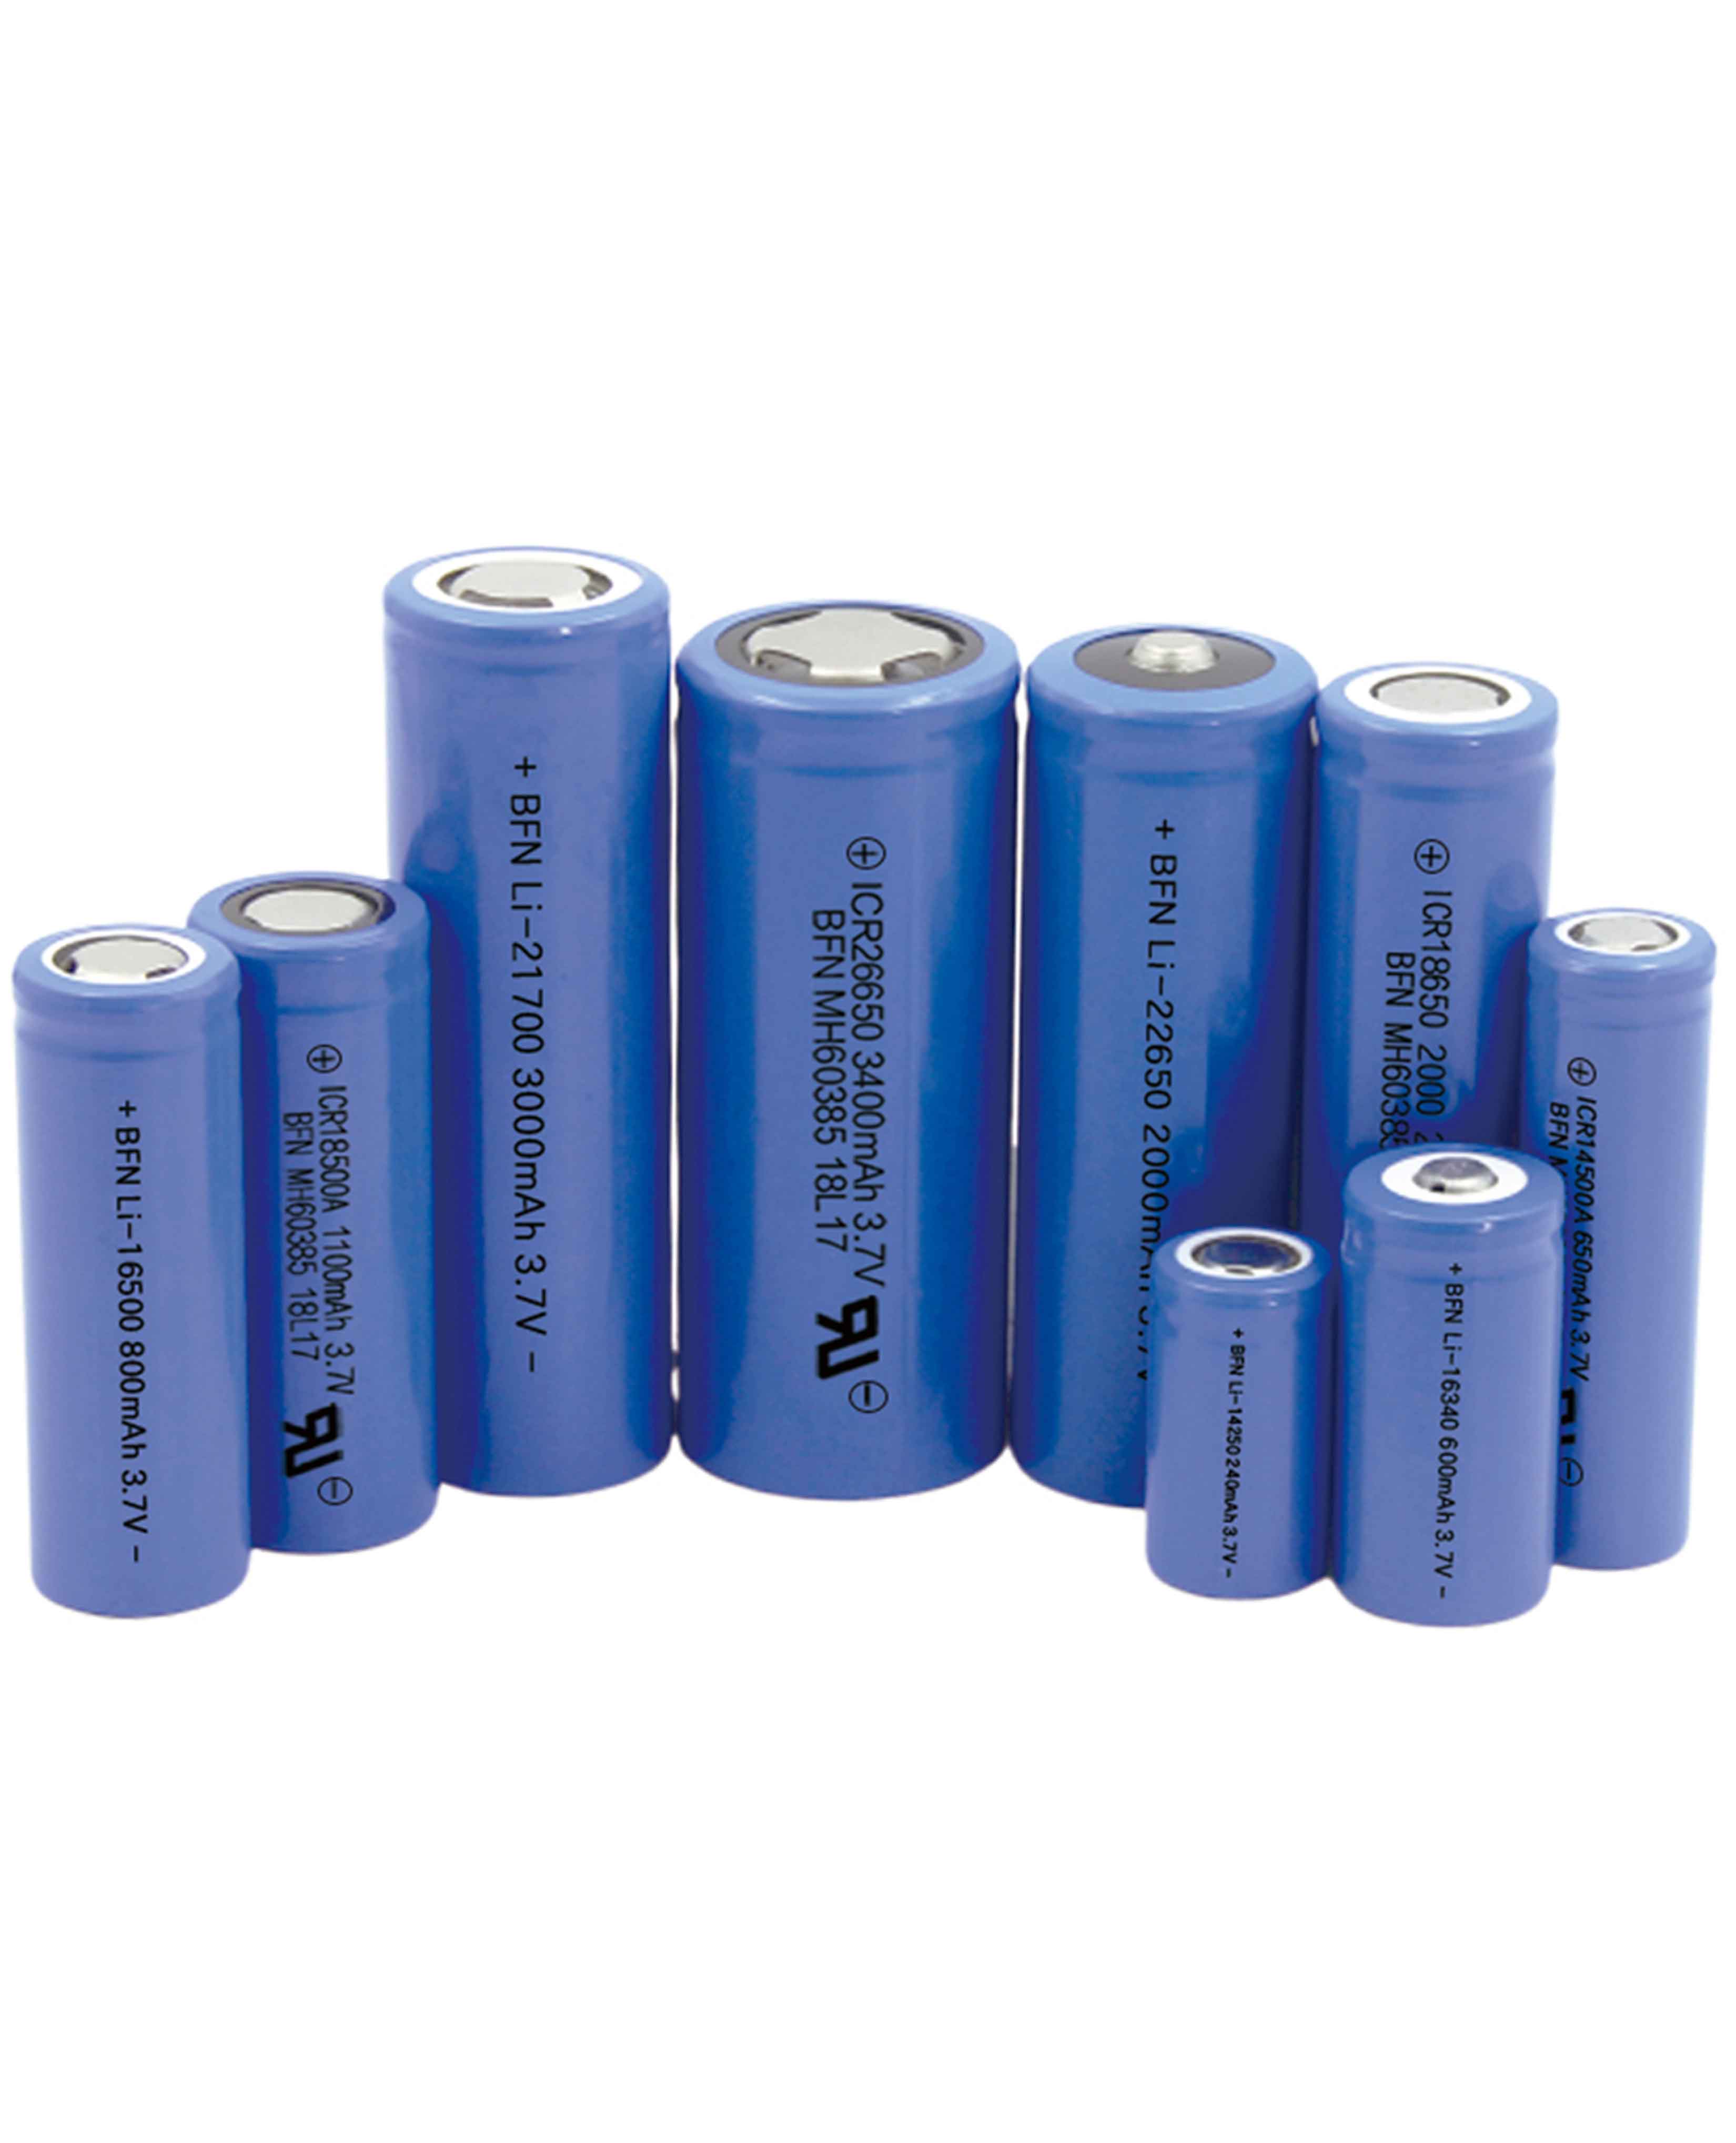 High Power Battery